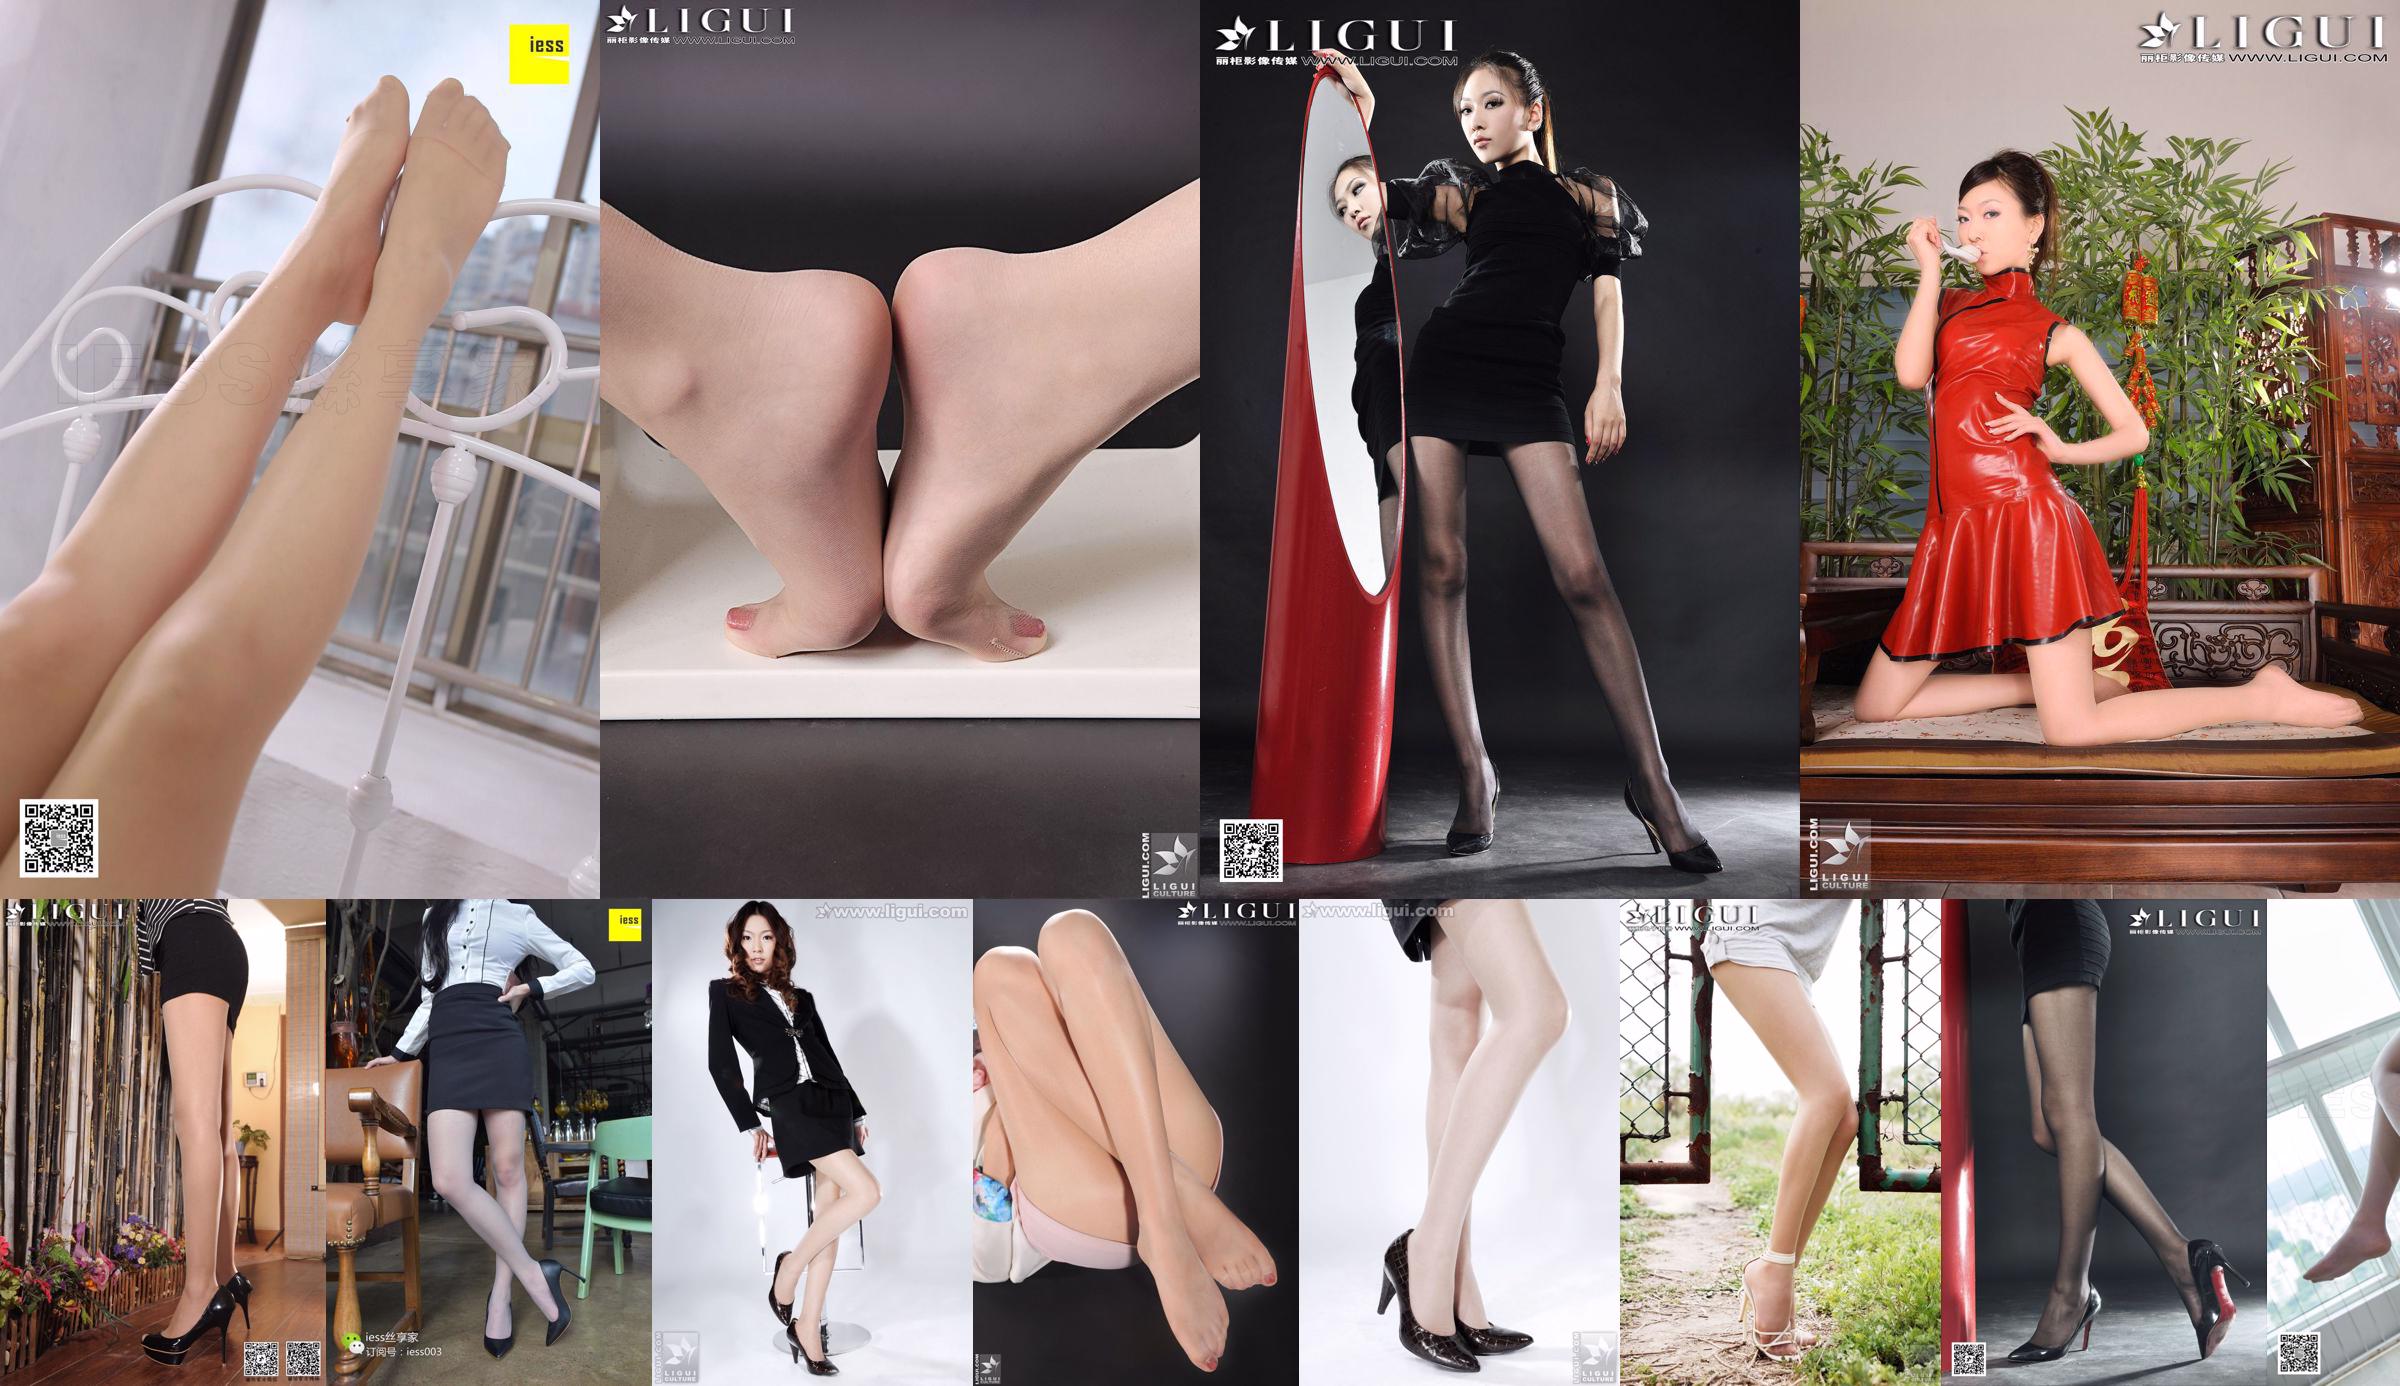 [丽 柜 Ligui] Model Wenxin "Putsy Hot Pants Girl" No.b0d731 Halaman 1